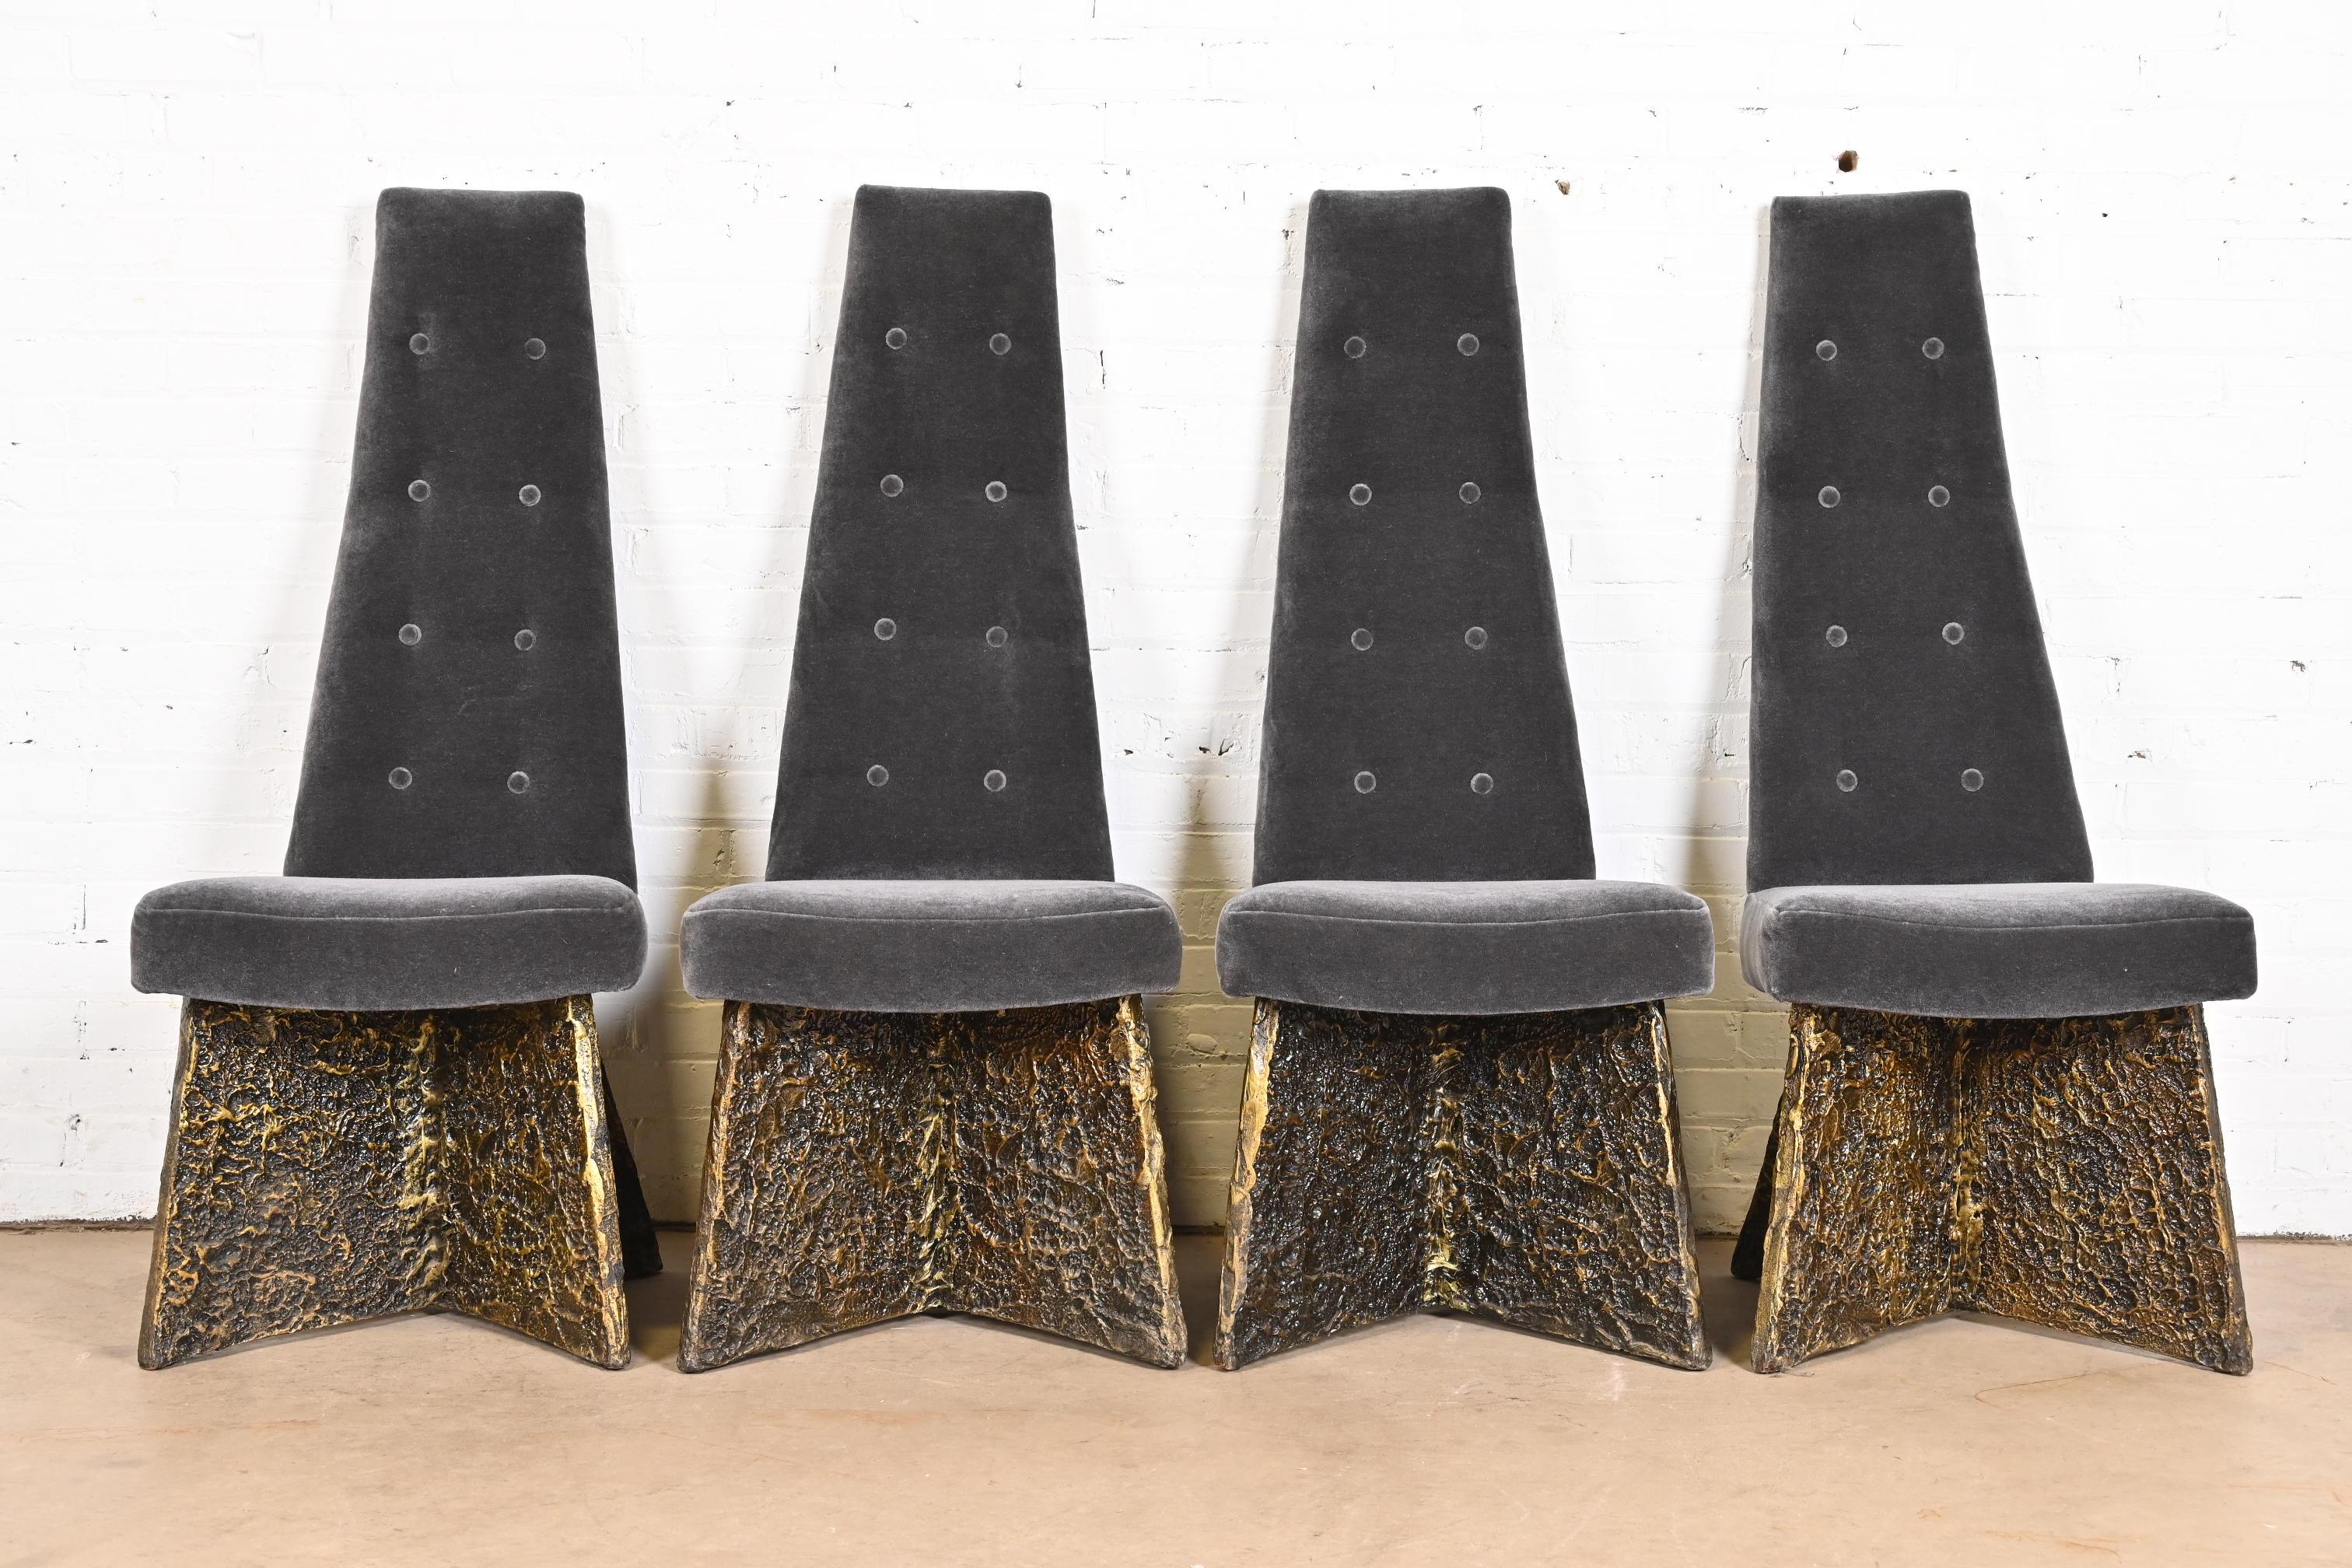 Ein seltener und herausragender Satz von vier brutalistischen Stühlen mit hoher Rückenlehne aus der Mitte des Jahrhunderts, die als Beistellstühle oder Esszimmerstühle verwendet werden können.

Von Adrian Pearsall

USA, 1960er Jahre

Gestell aus